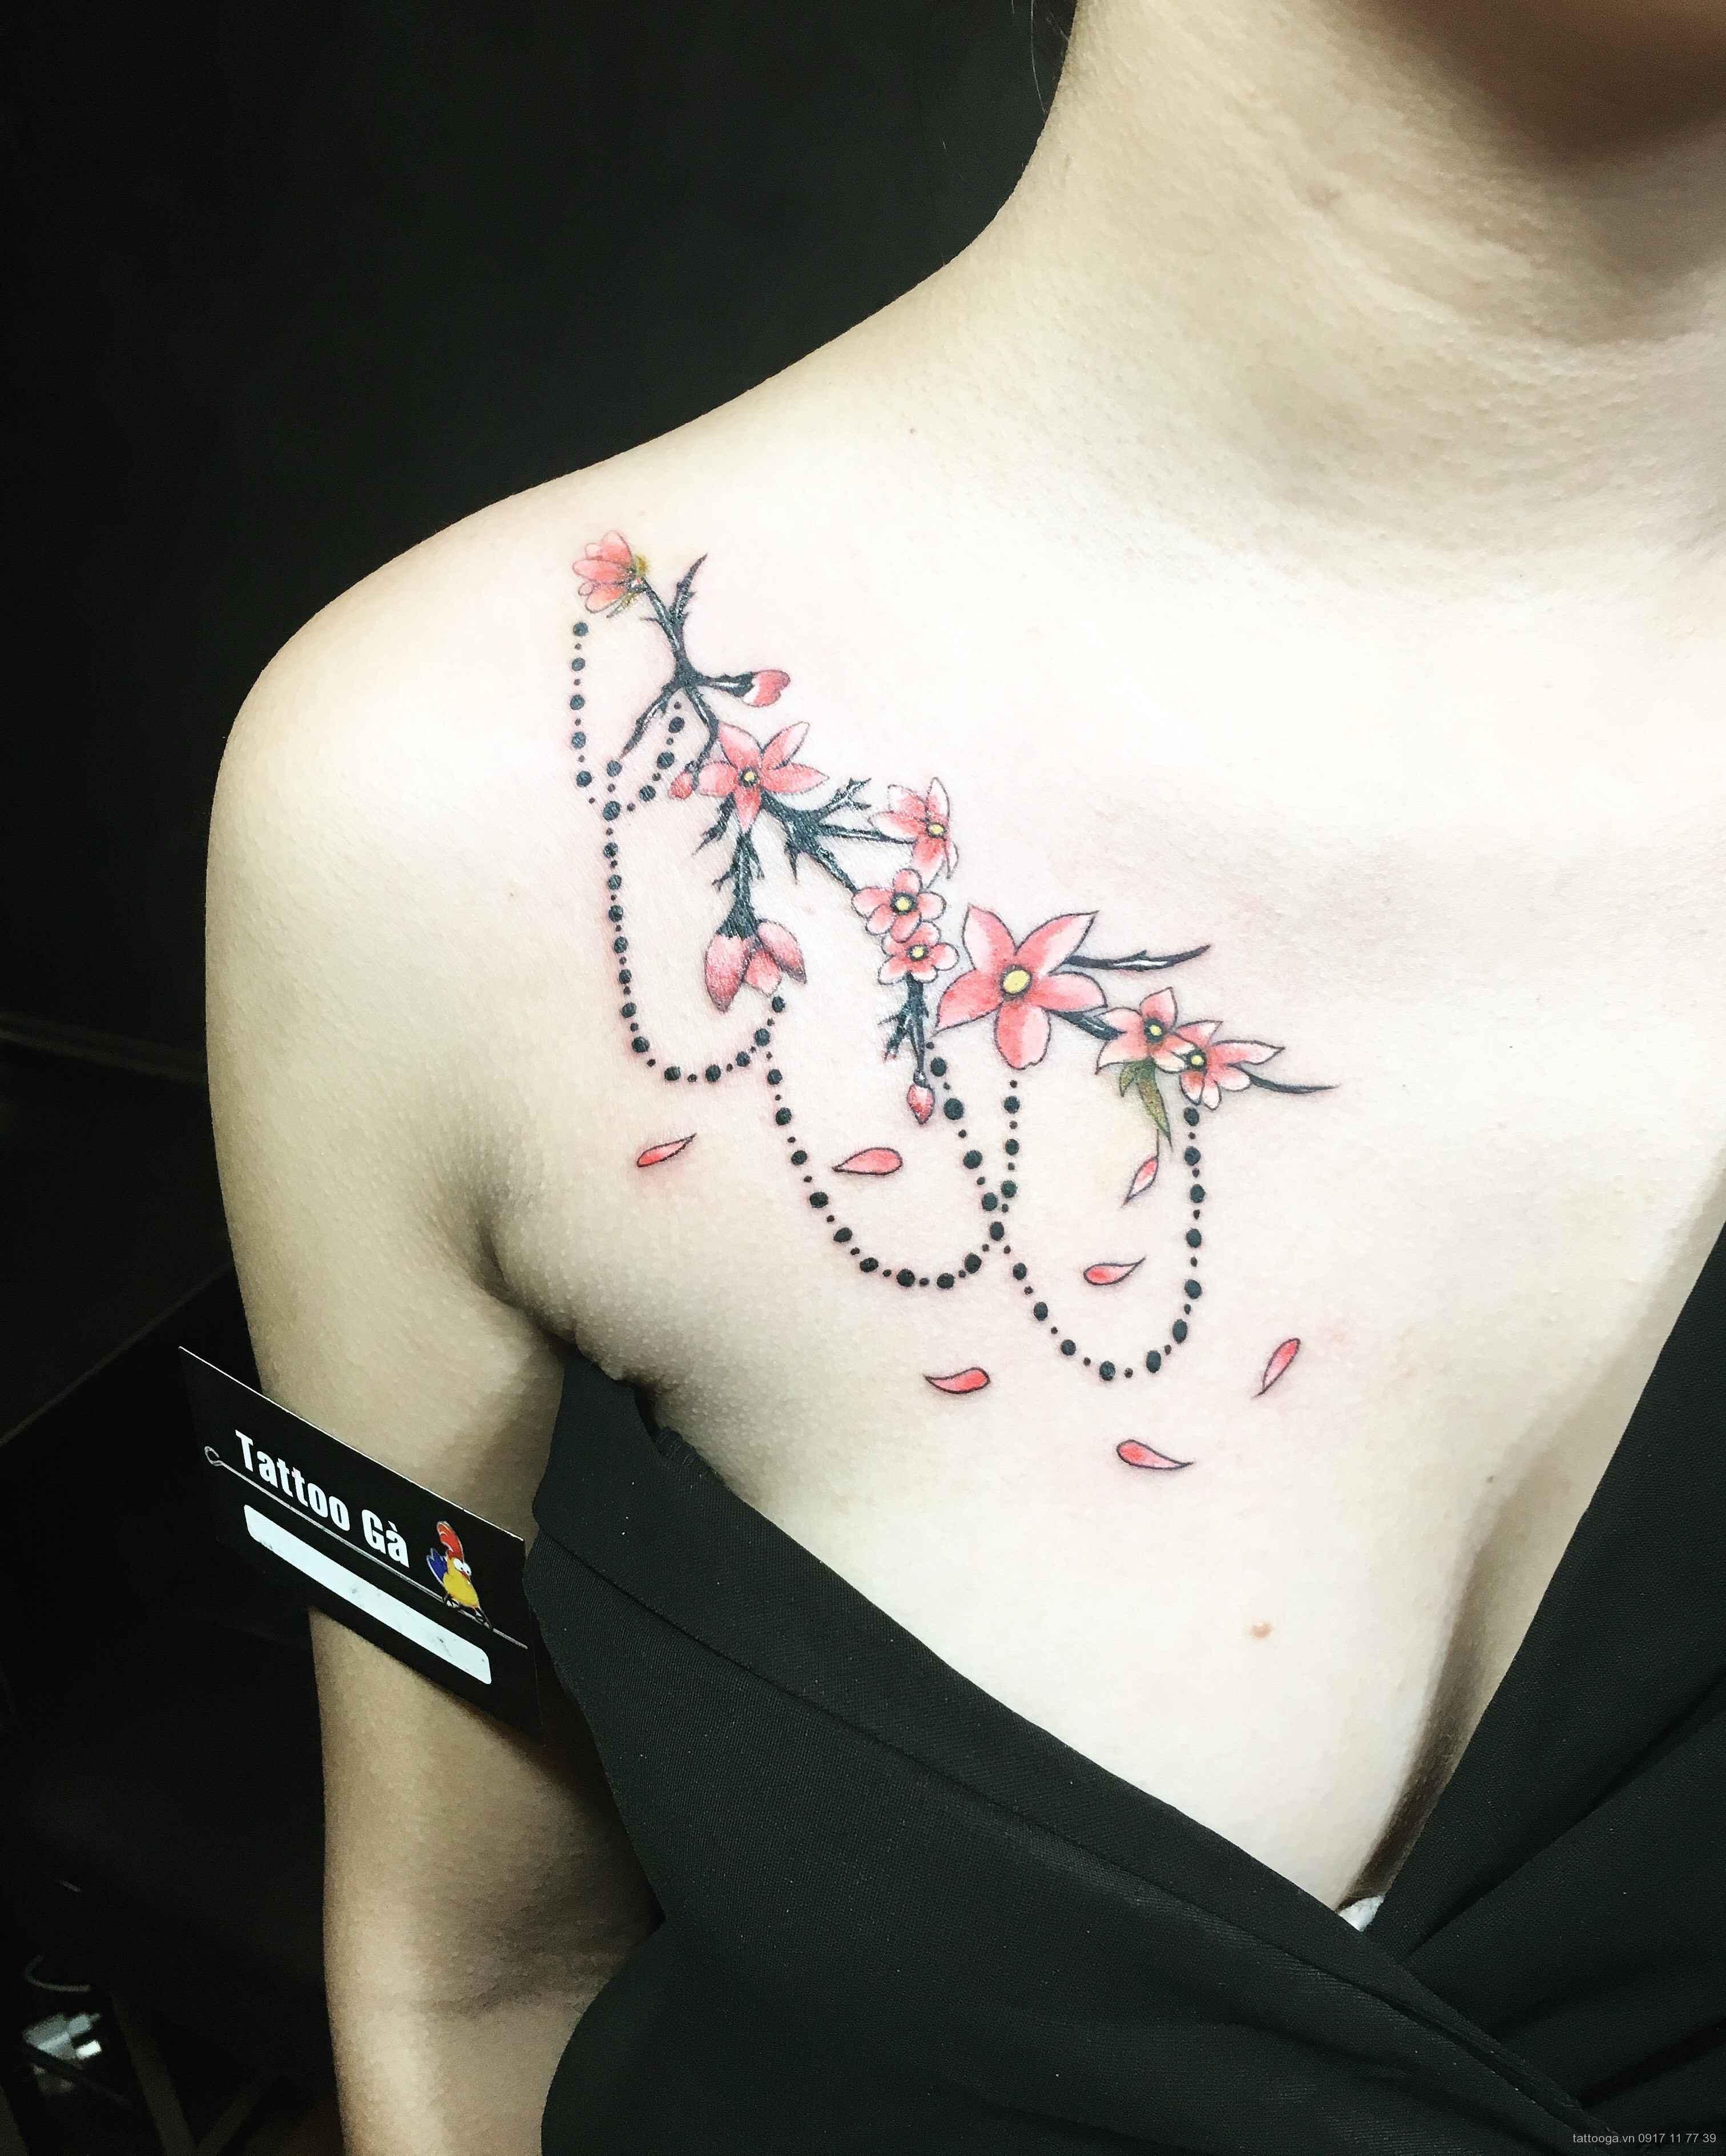 Hình xăm hoa ở ngực cho nữ - Tattoo Gà